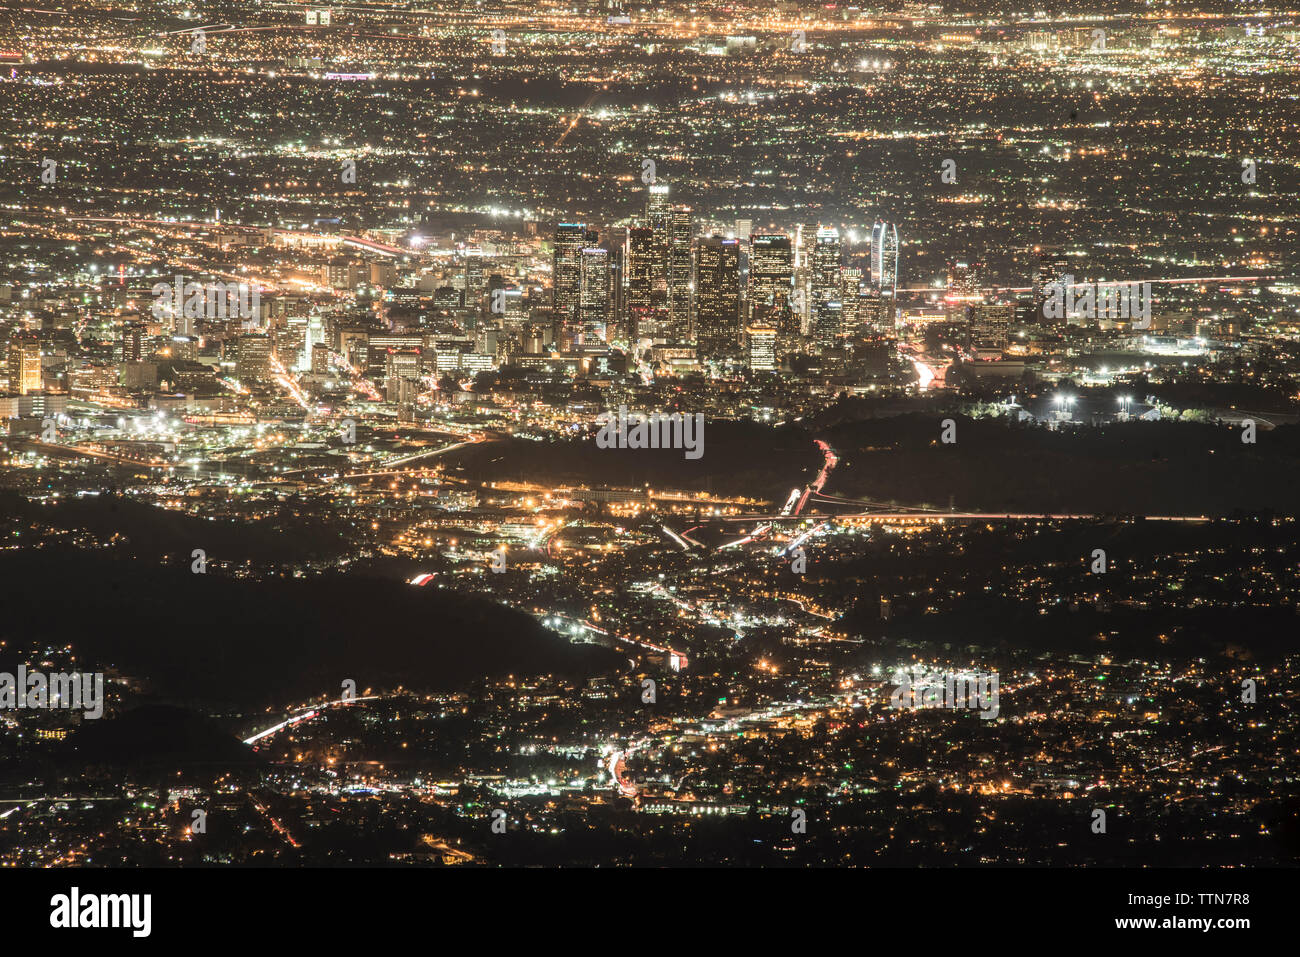 Vue aérienne de allumé cityscape at night Banque D'Images